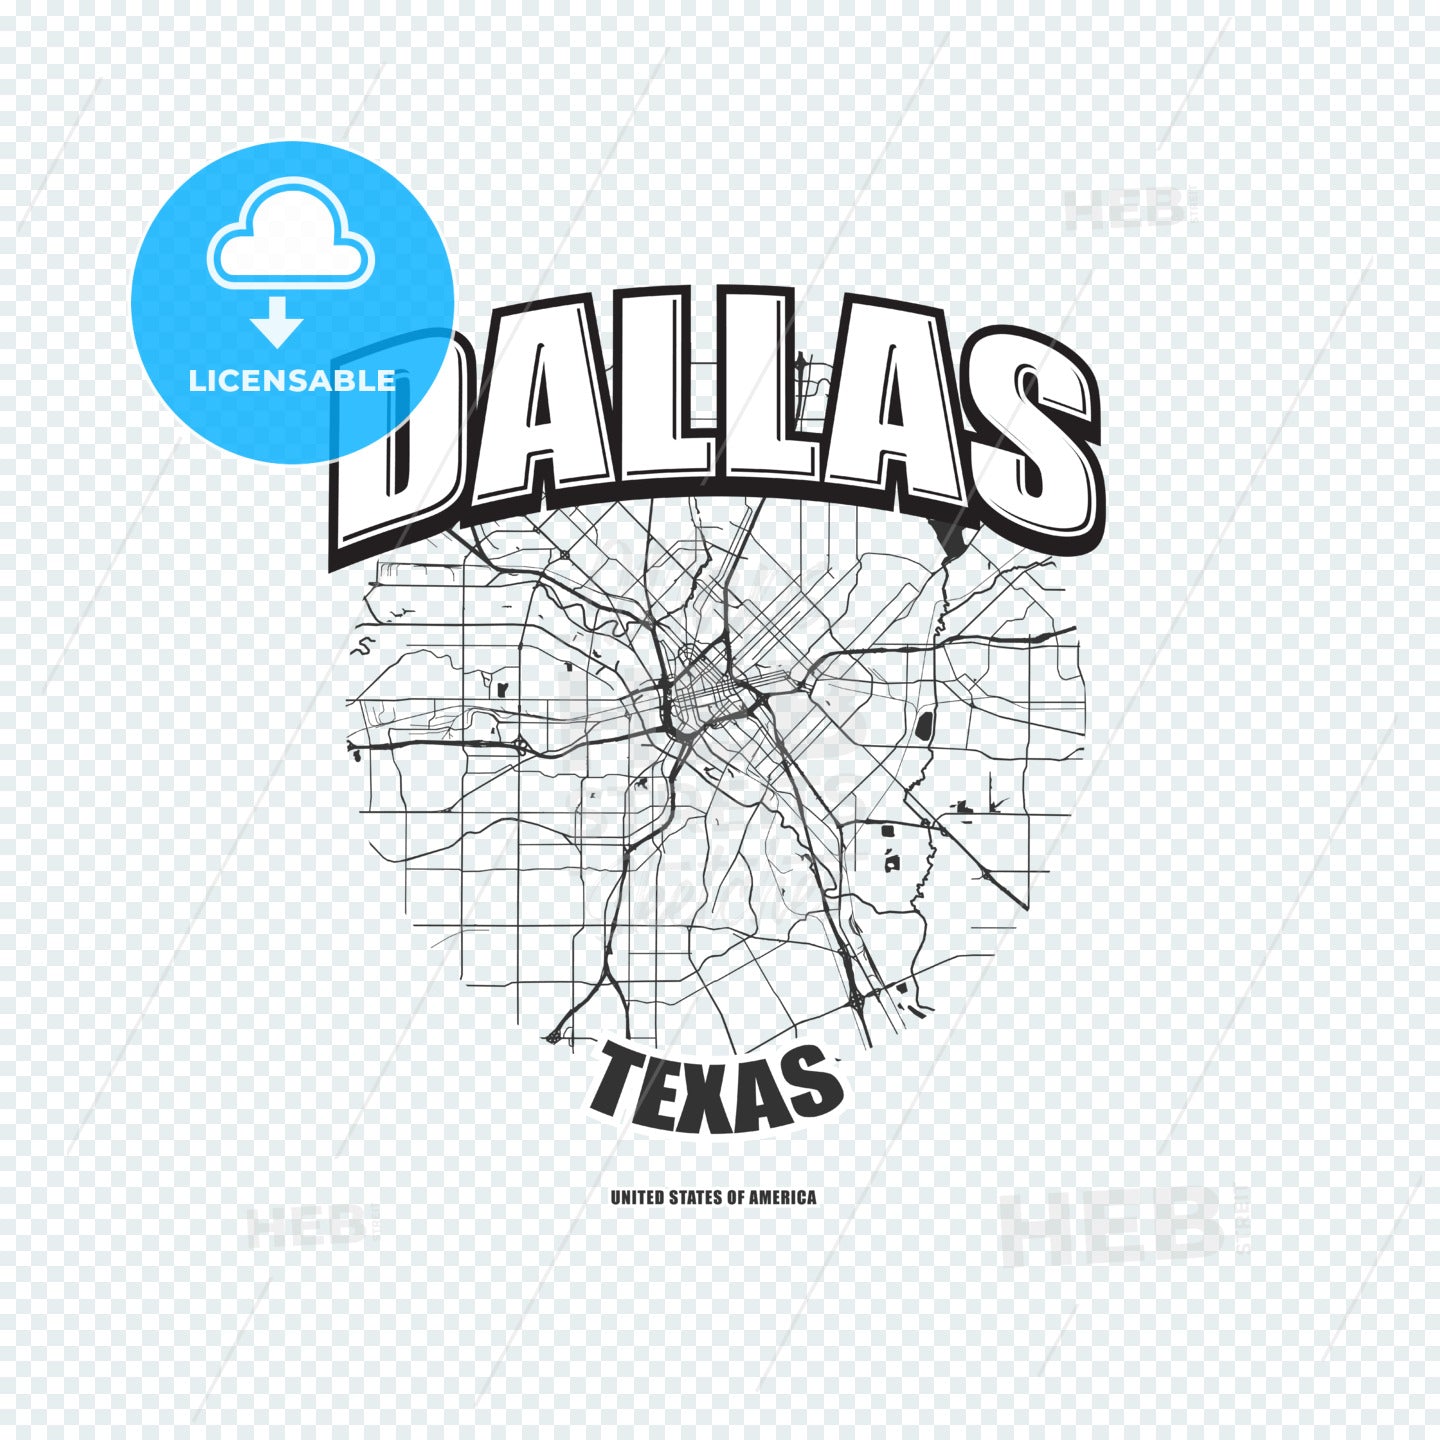 Dallas, Texas, logo artwork – instant download